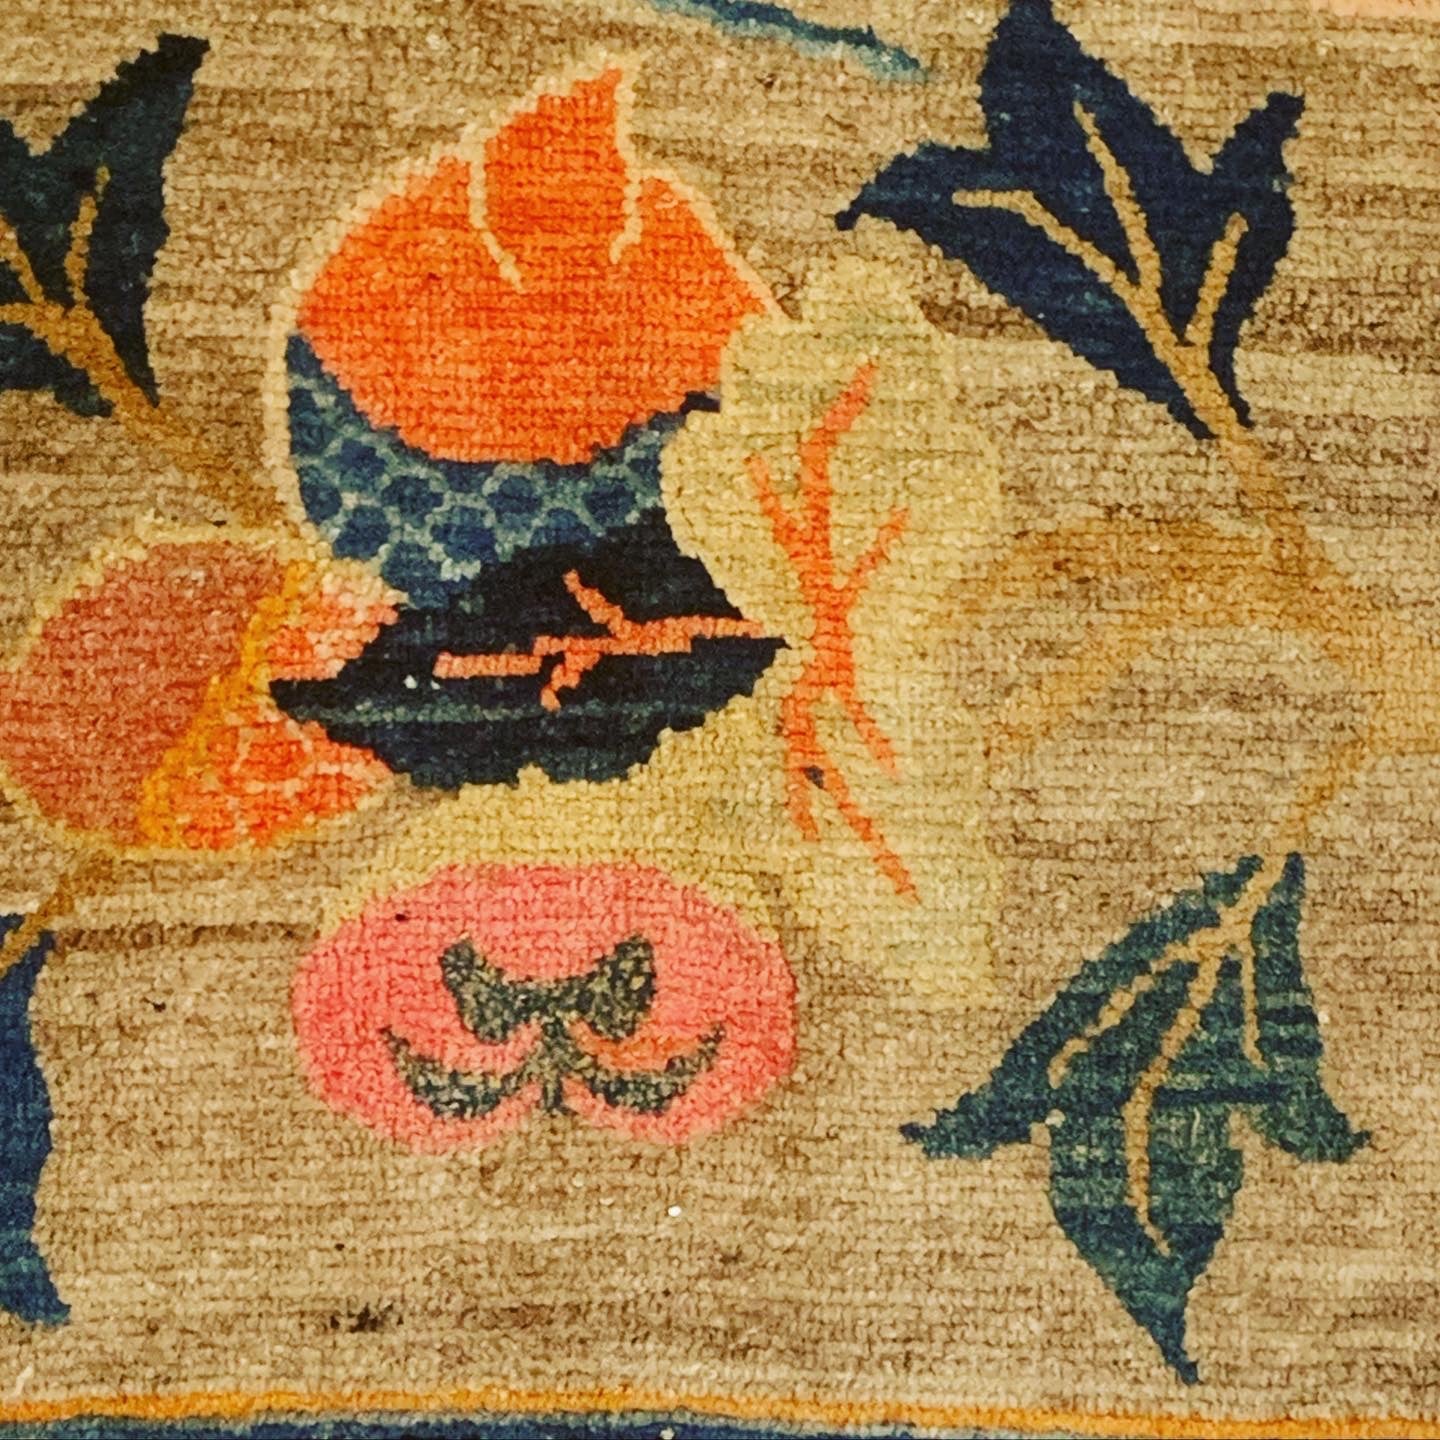 An antique Tibetan rug